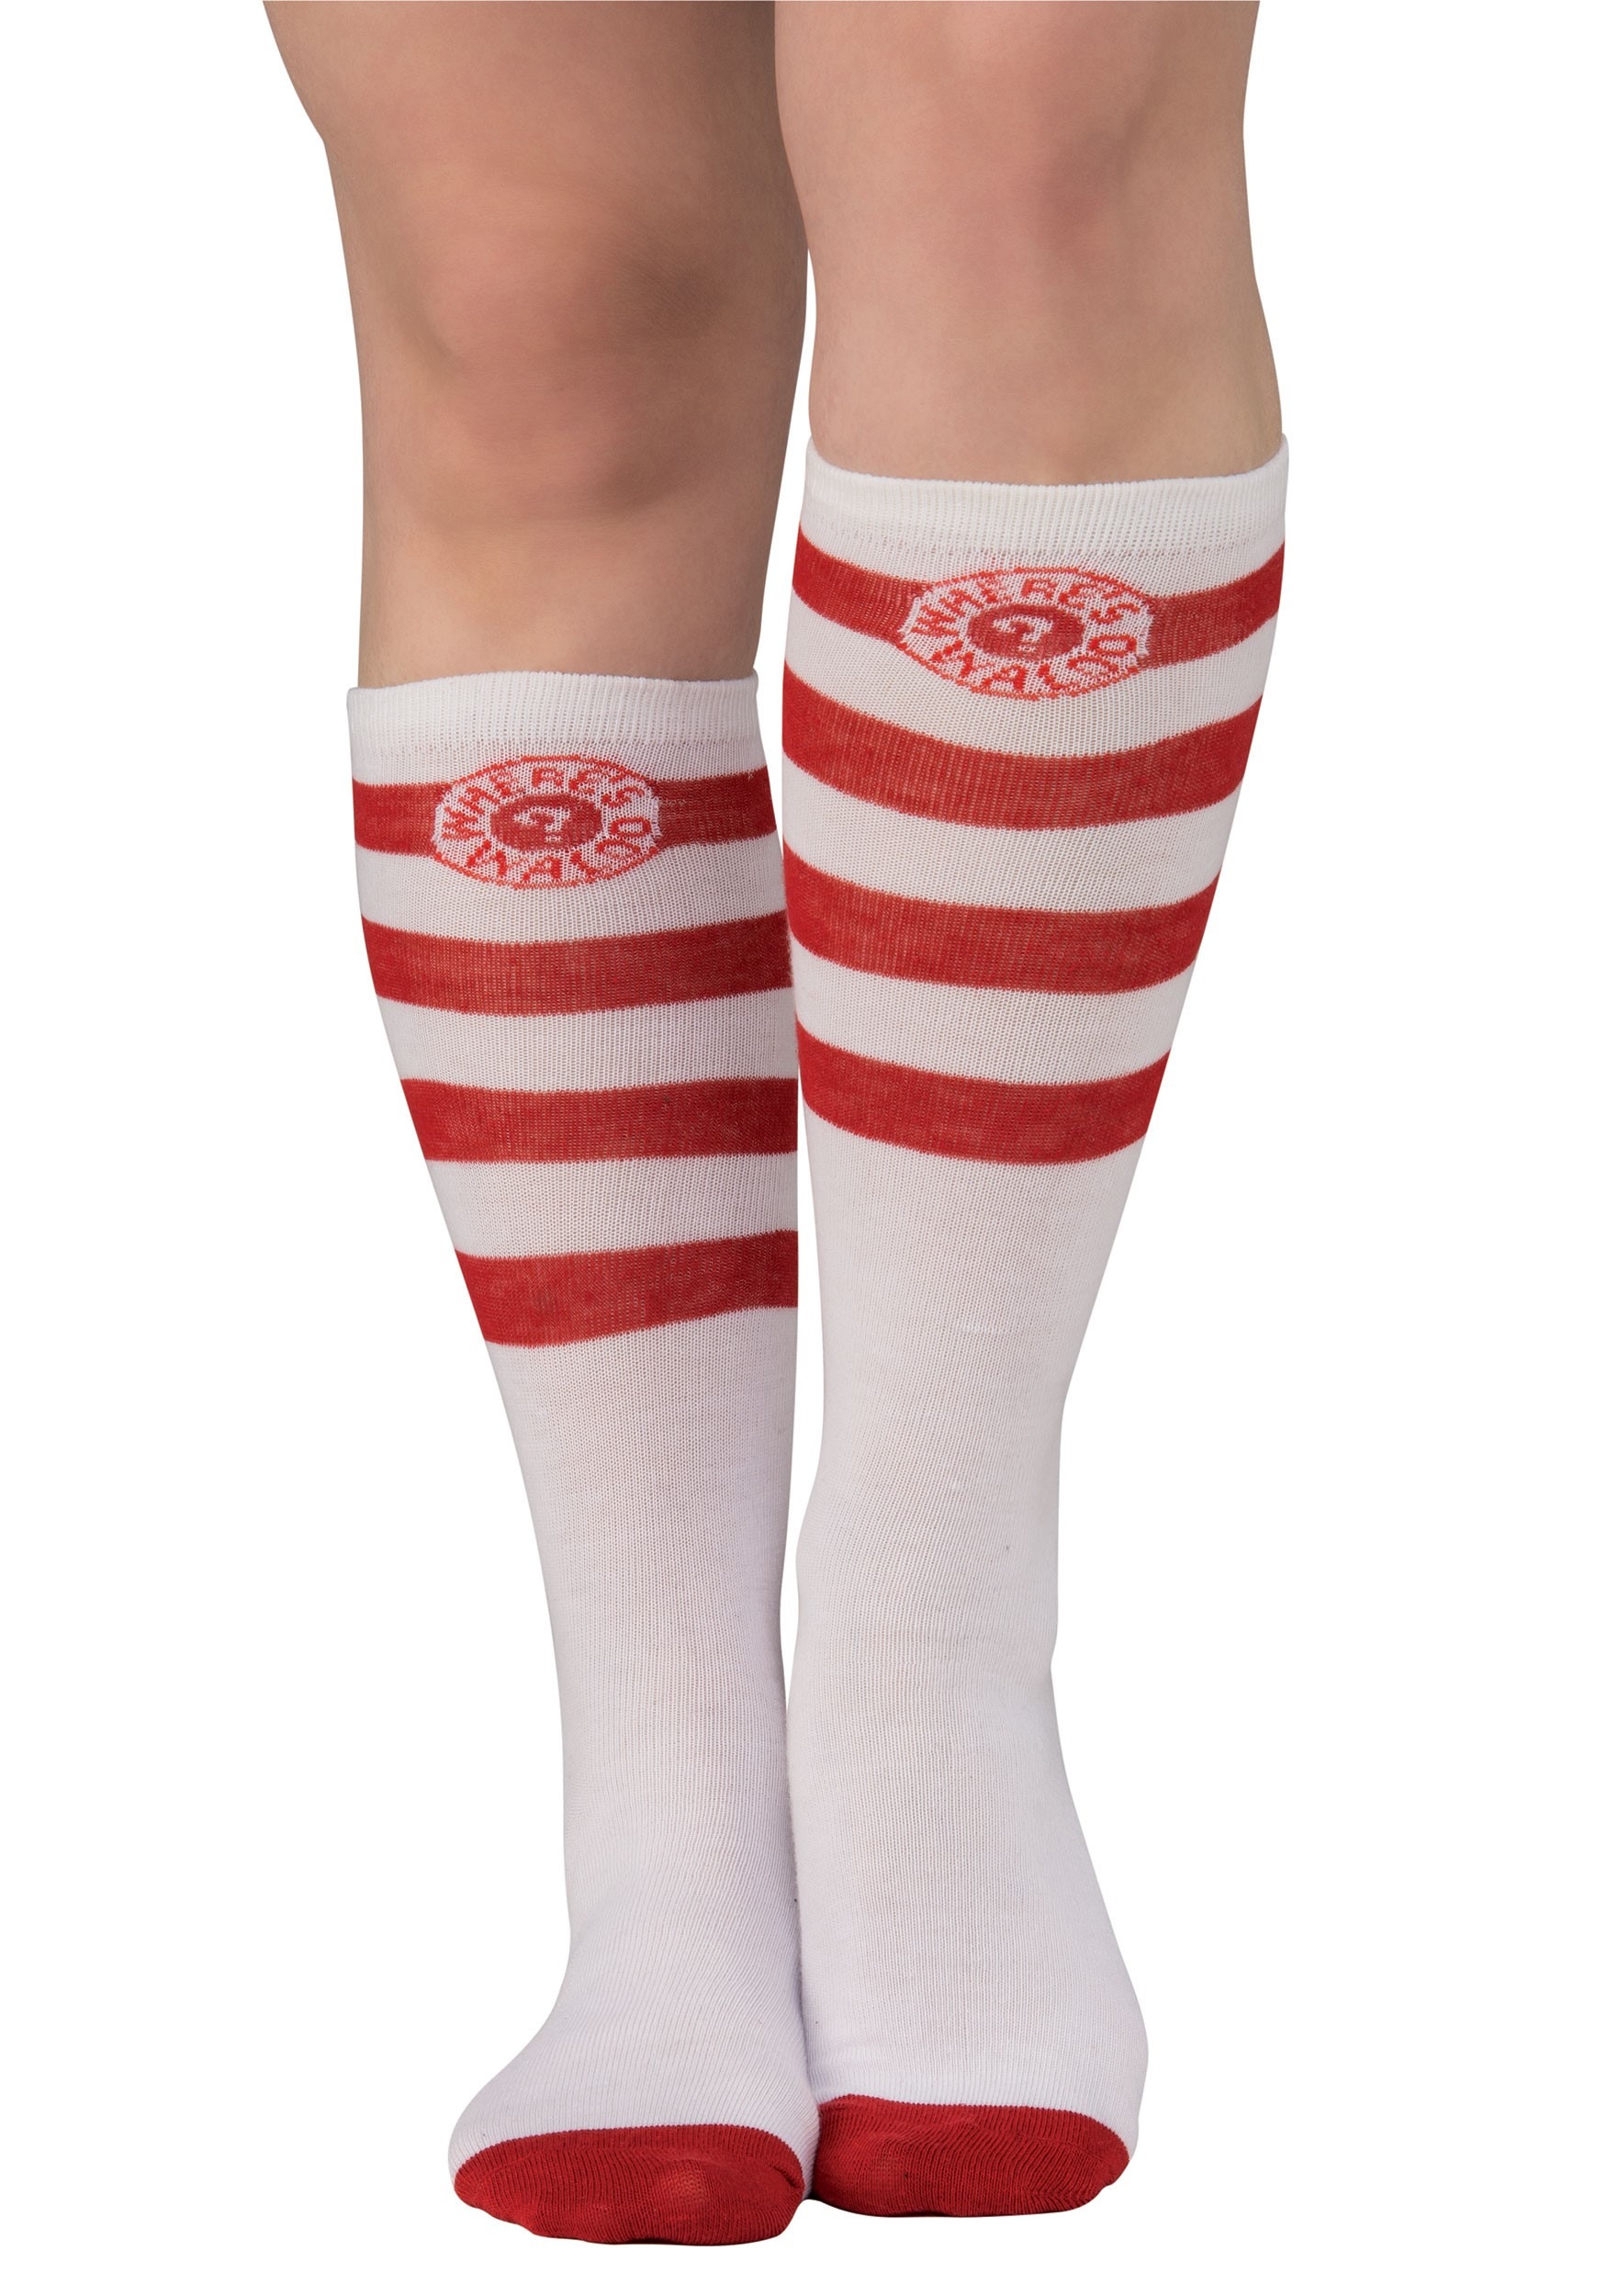 Where’s Waldo Striped Socks